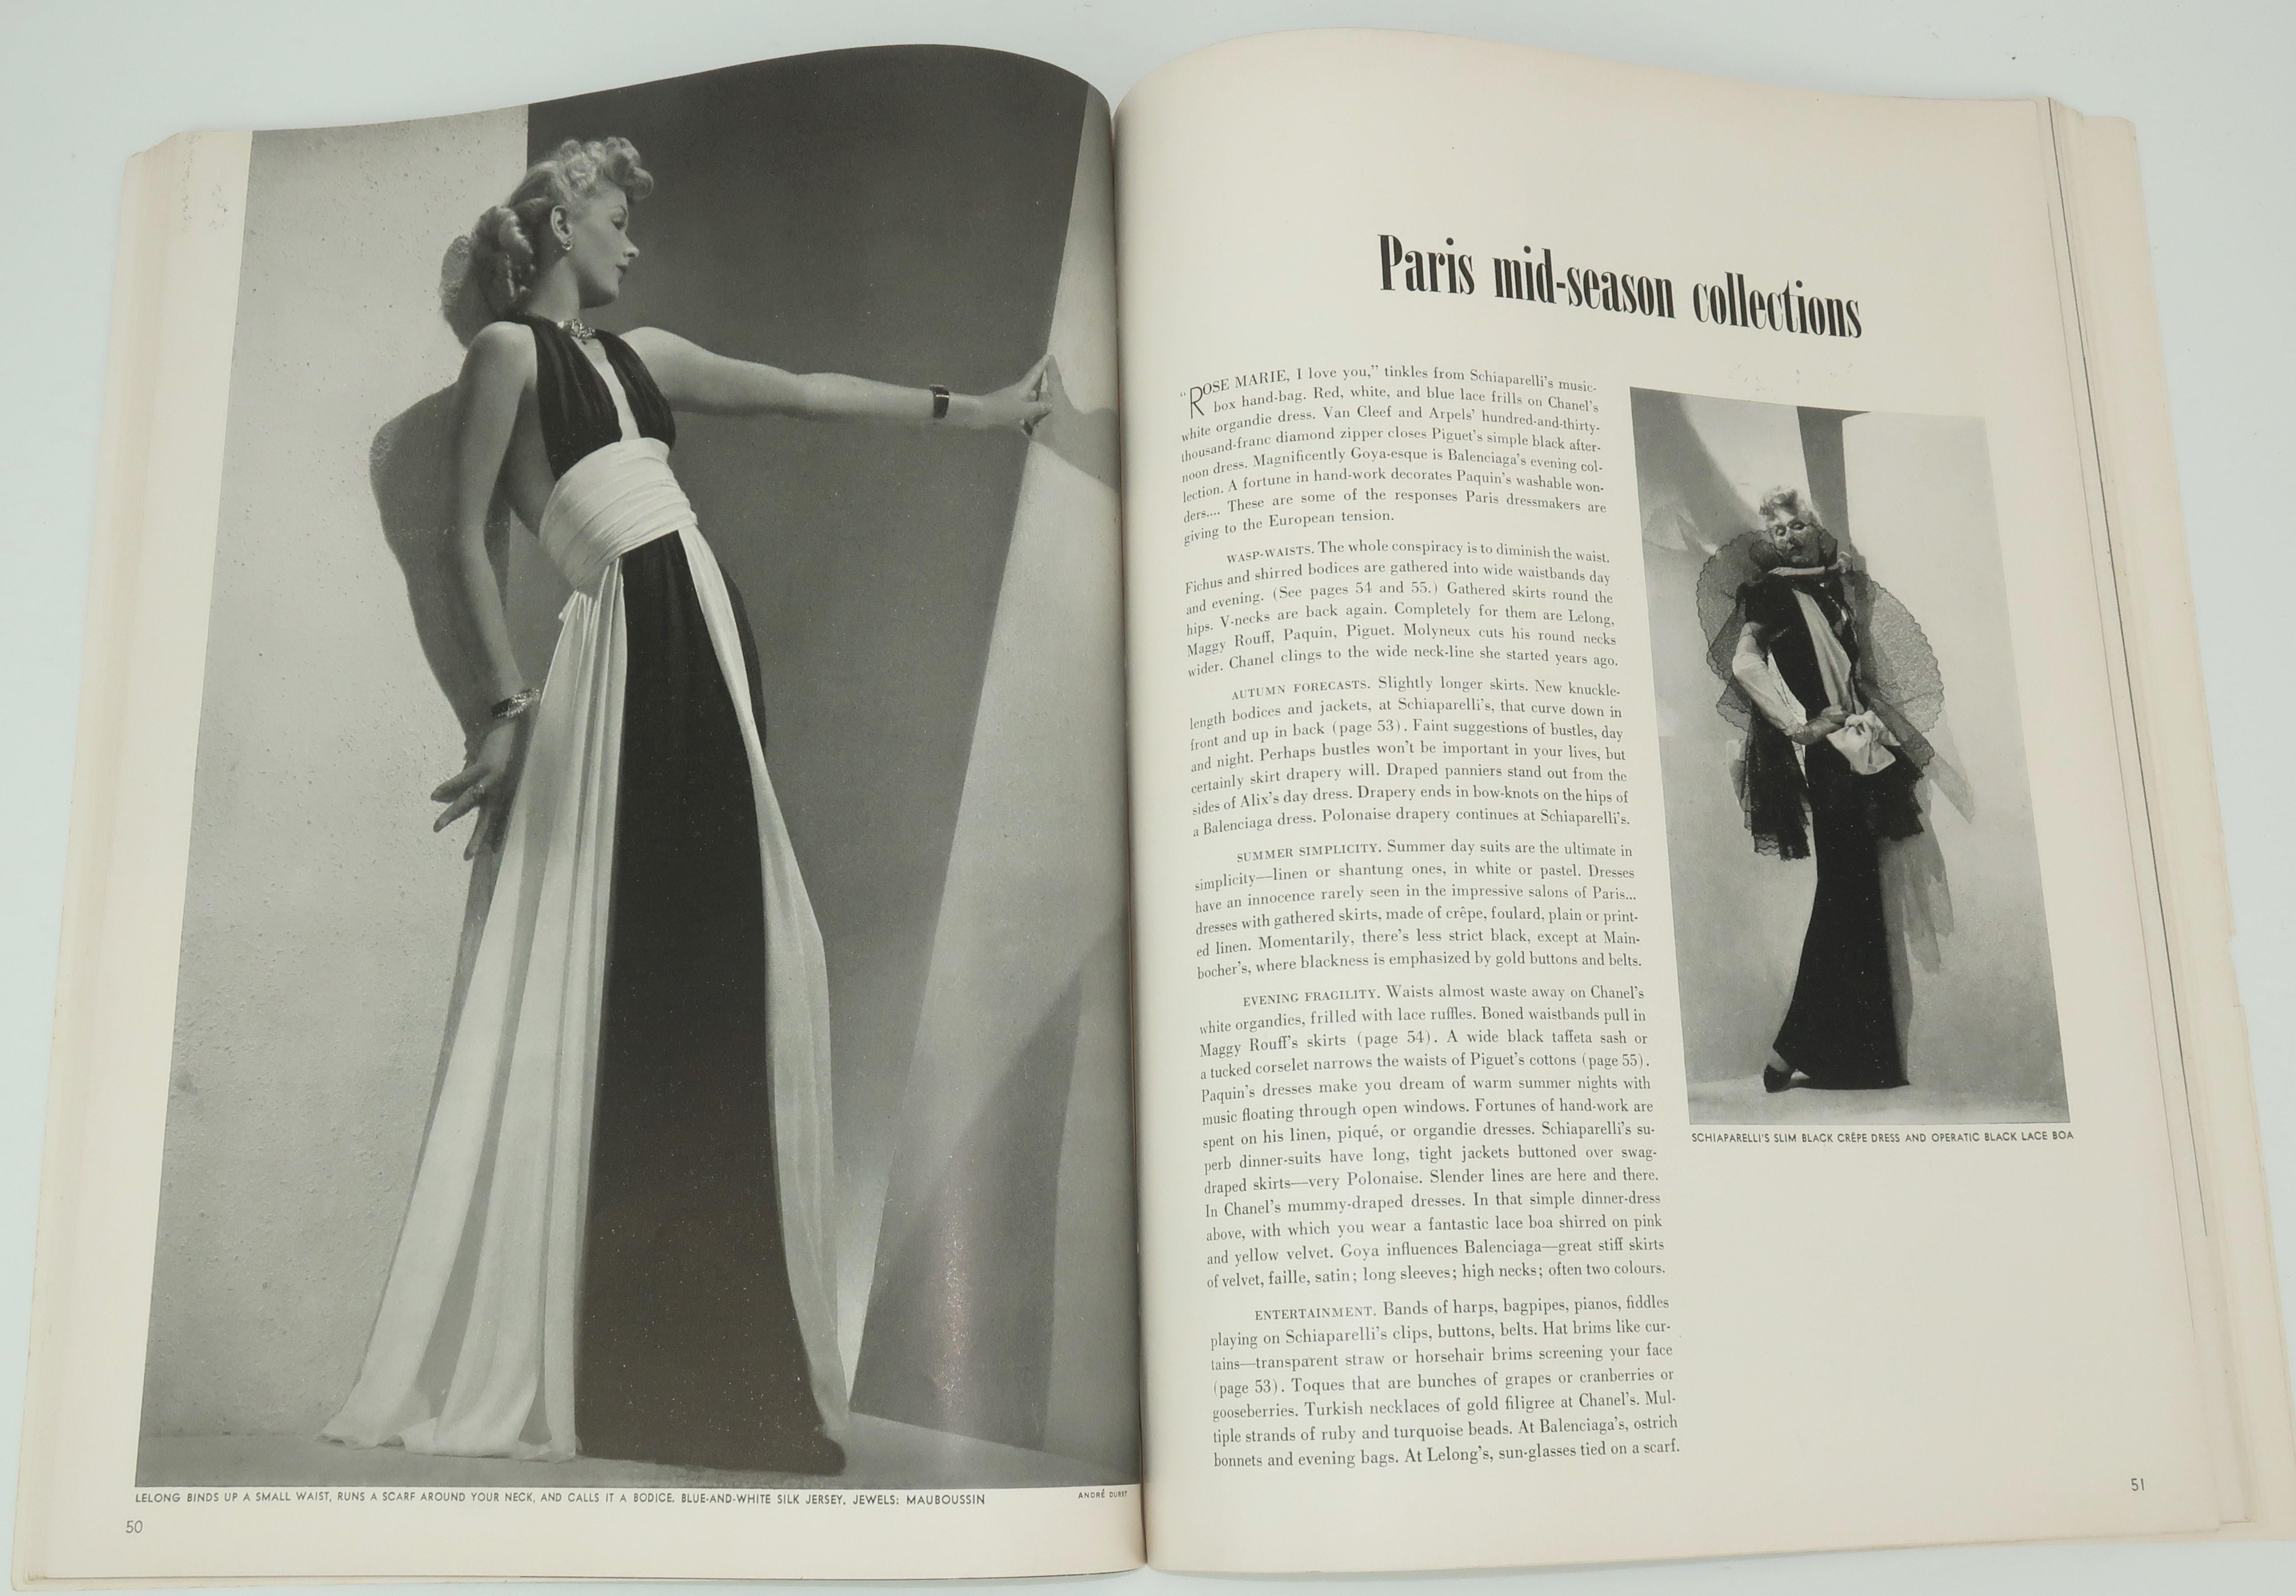 1939 Vogue Magazine With Salvador Dali Cover Art 1